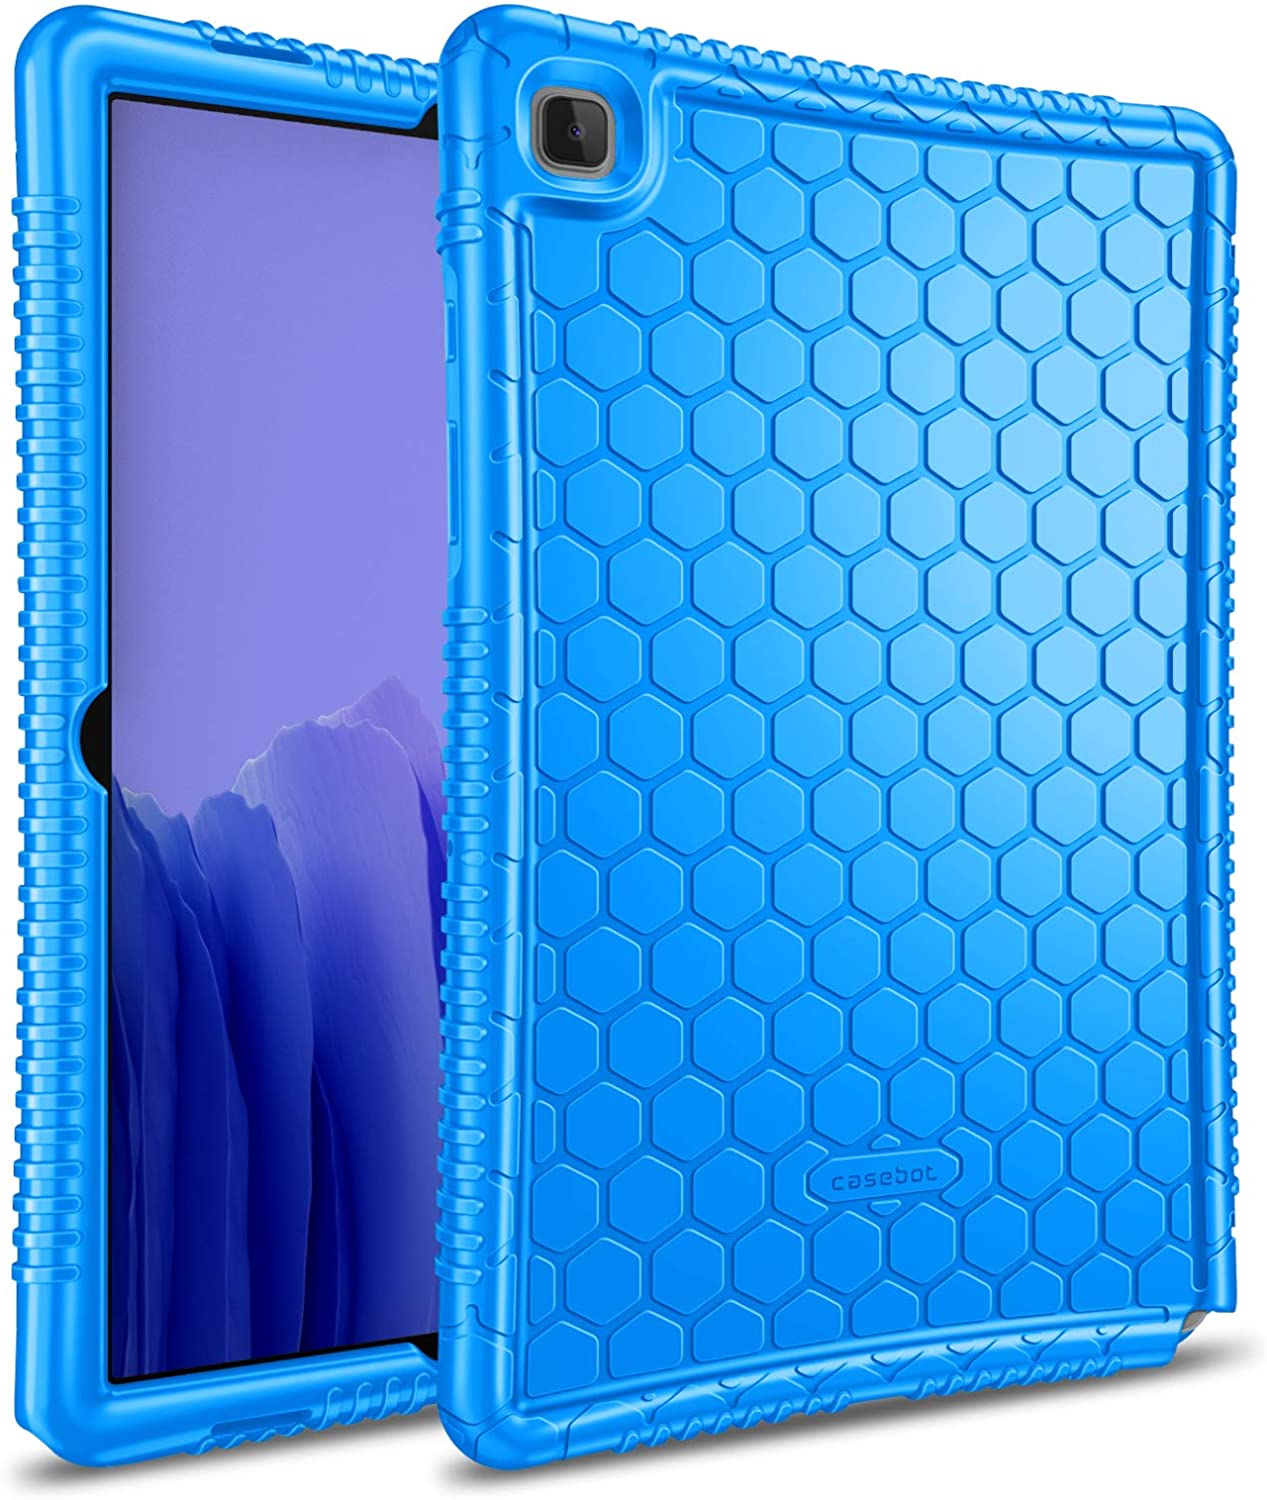 Samsung Galaxy Tab A7 10.4 Case Silicone Blue